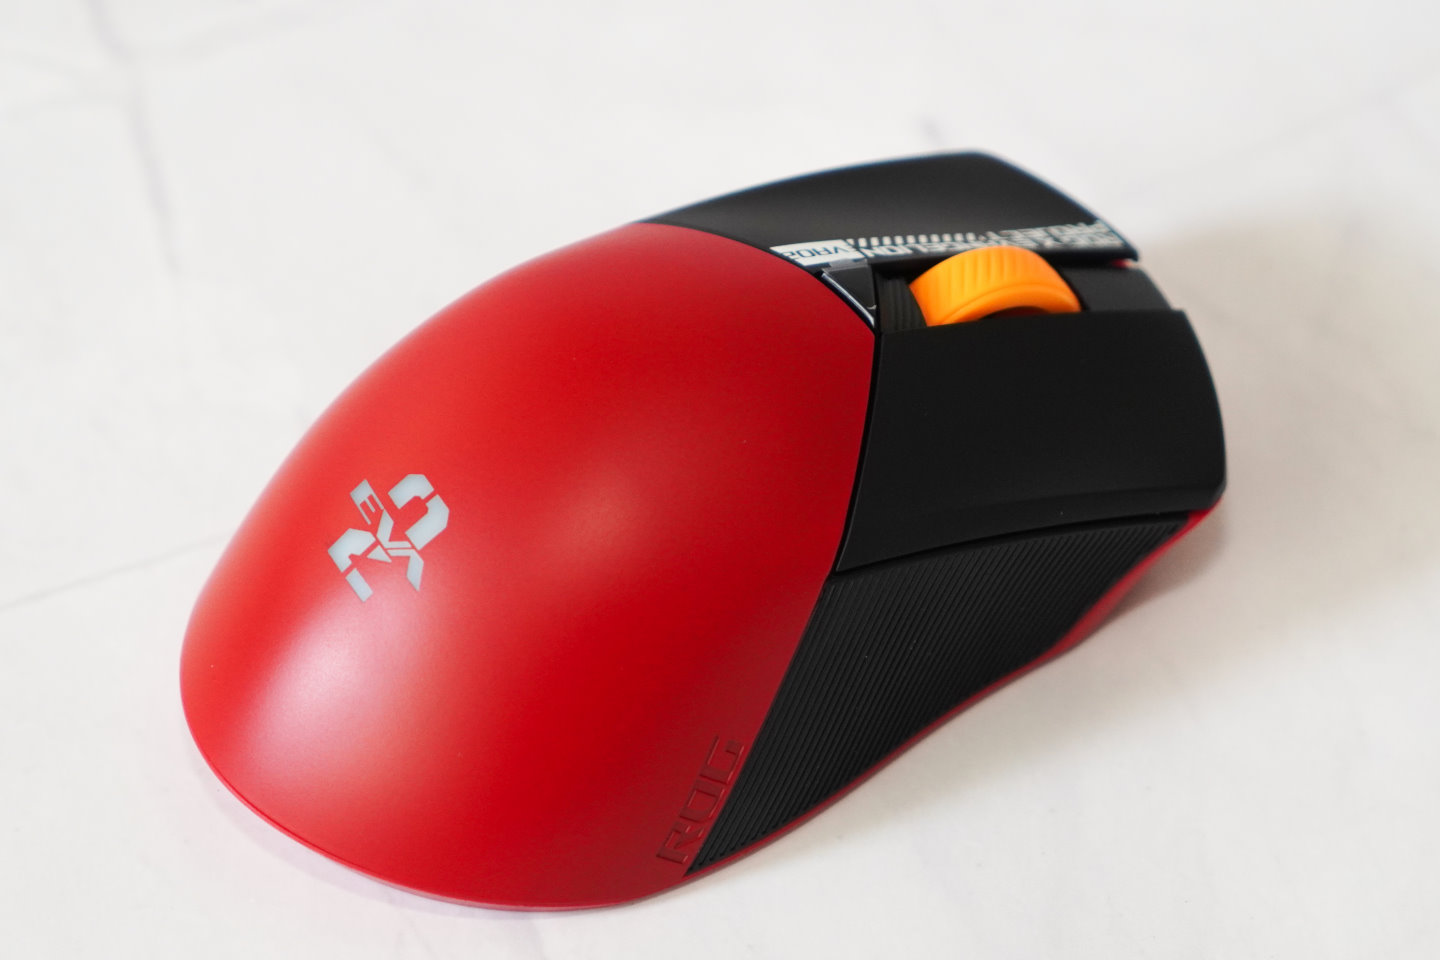 滑鼠本體配色採用紅、黑、橘元素，尾部有可以顯示RGB背光的「EVA-02」標誌。面具有左鍵、右鍵、滾輪，並在滾輪下方有DPI切換快捷鍵。